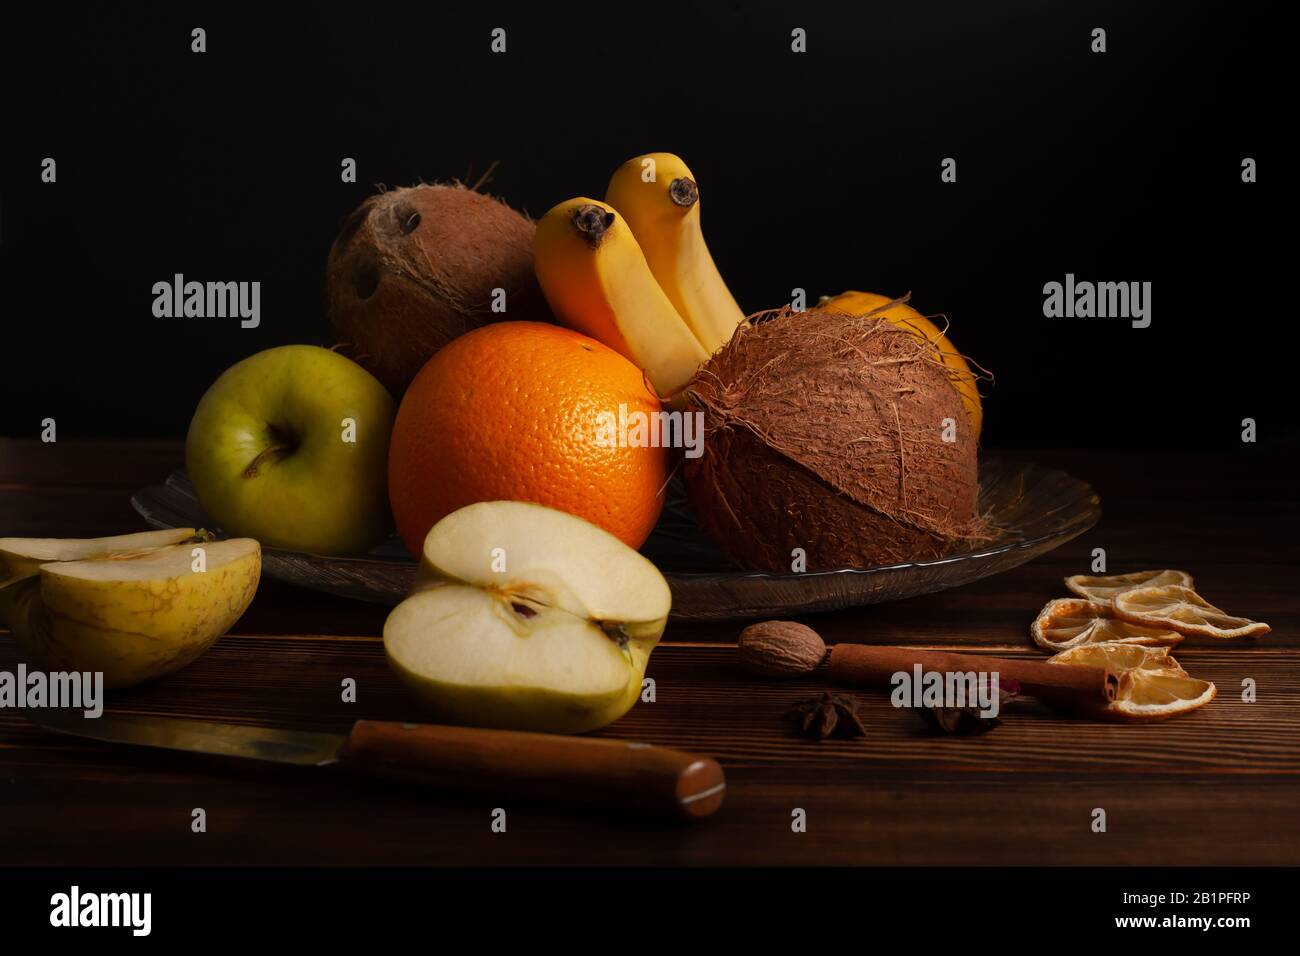 La vida de las frutas variadas es dramática Foto de stock